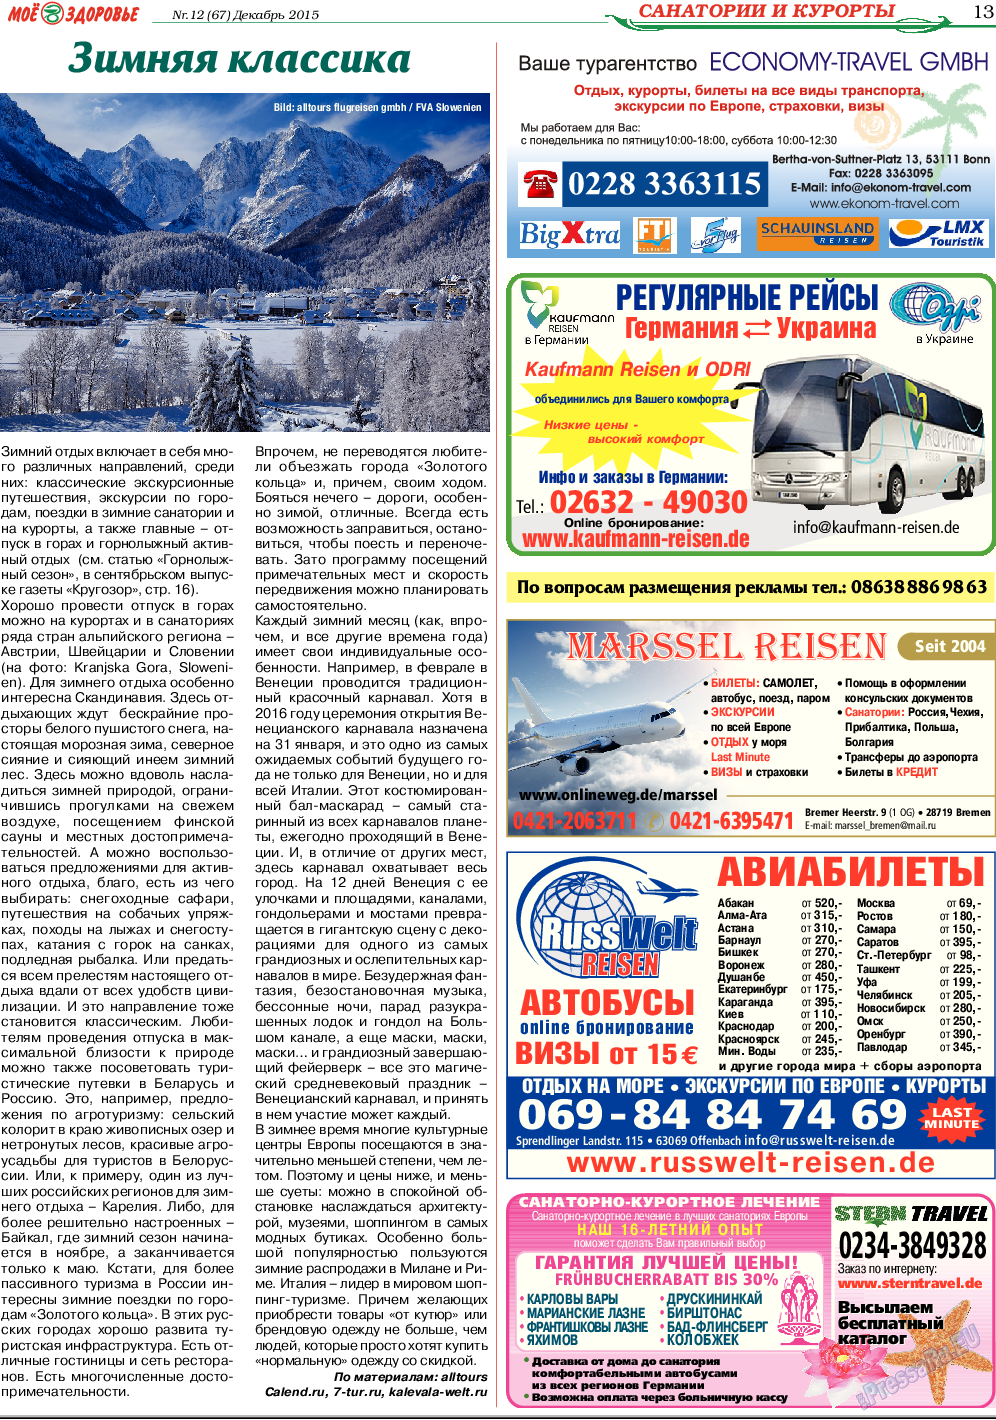 Кругозор, газета. 2015 №12 стр.13